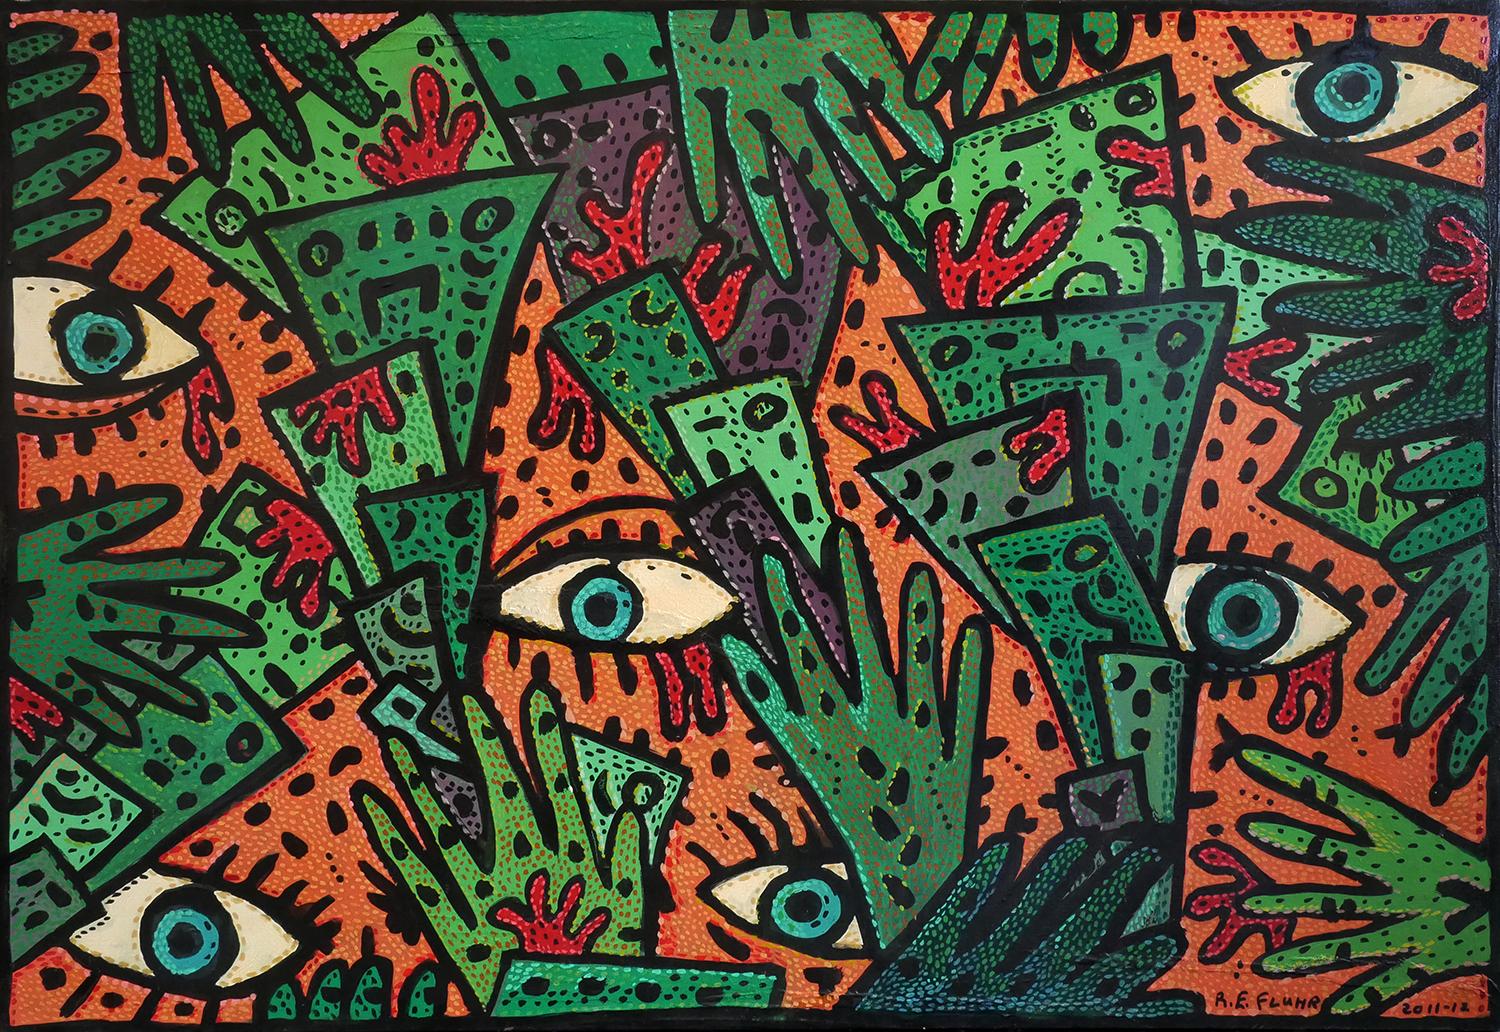 Abstract Painting Richard Fluhr - L'argent du sang ? Peinture contemporaine abstraite orange, verte et marron